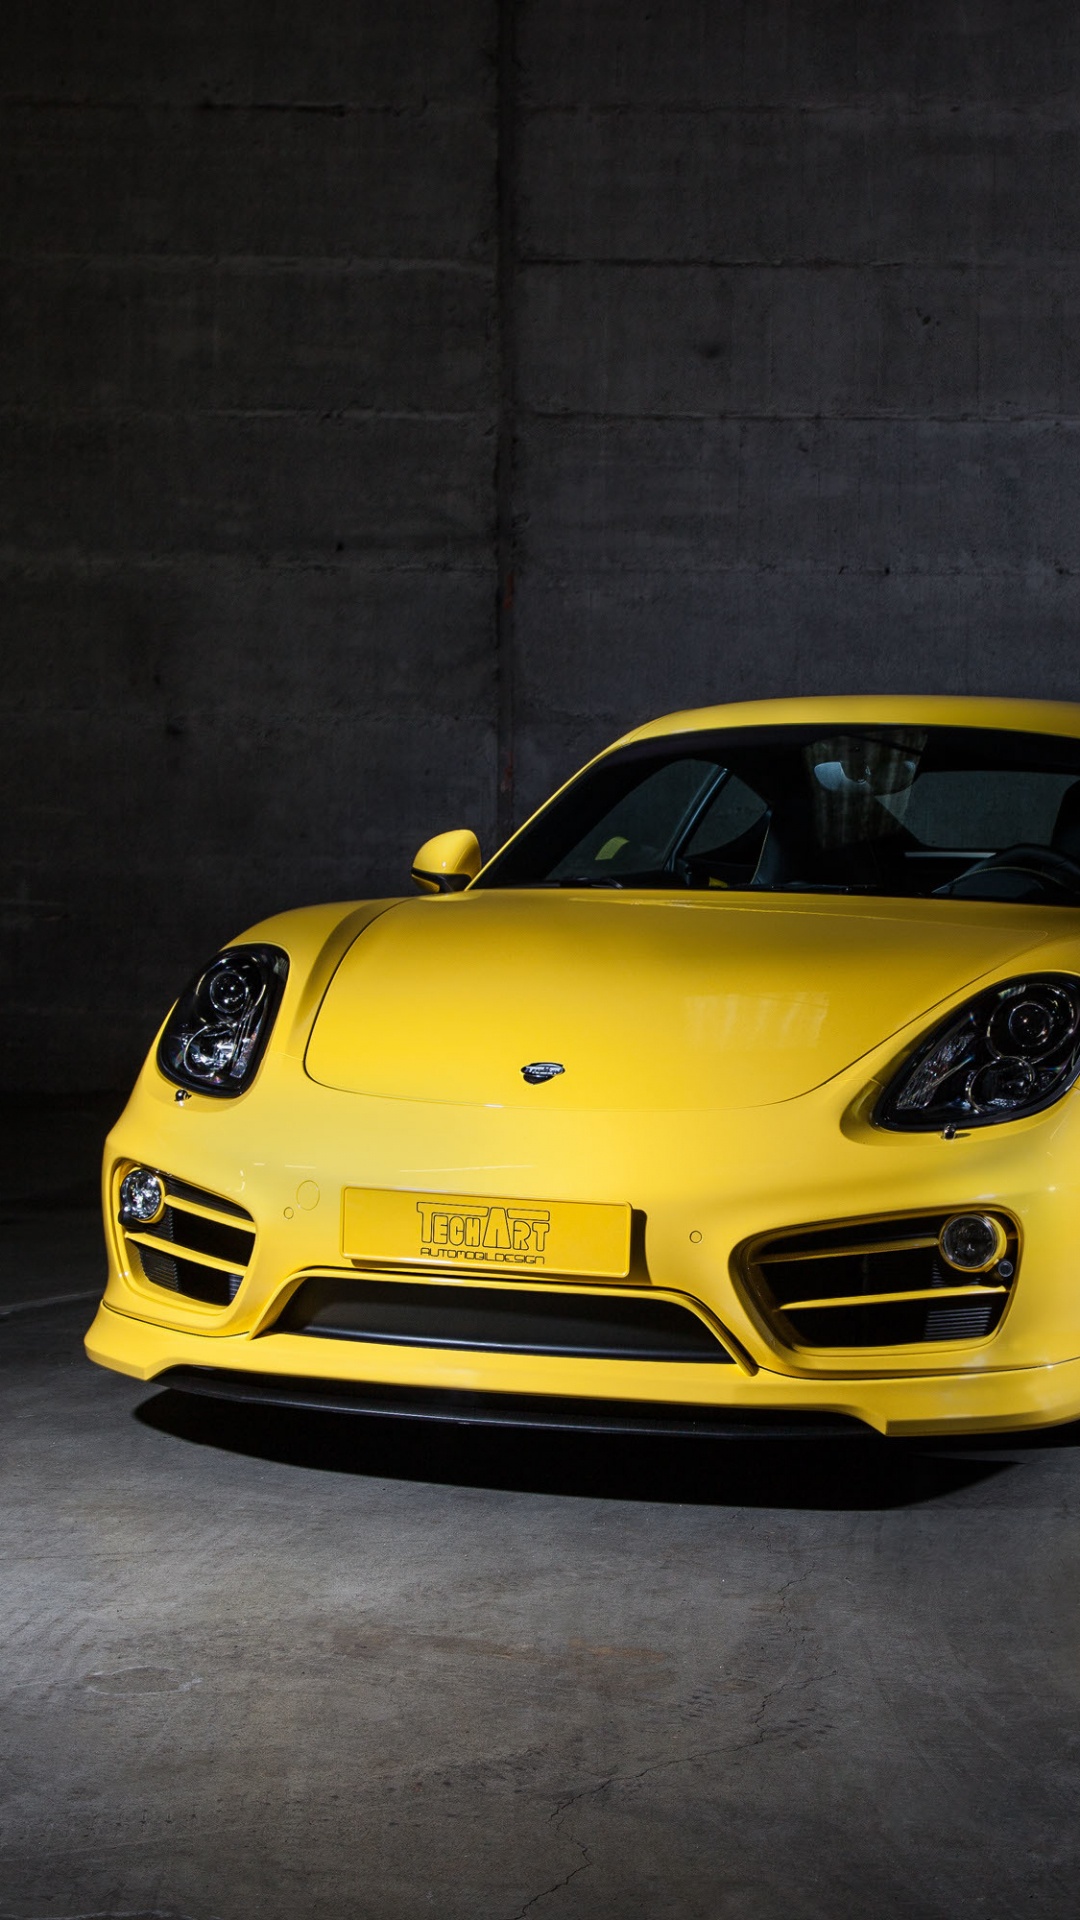 Porsche 911 Amarillo Estacionado en un Garaje. Wallpaper in 1080x1920 Resolution